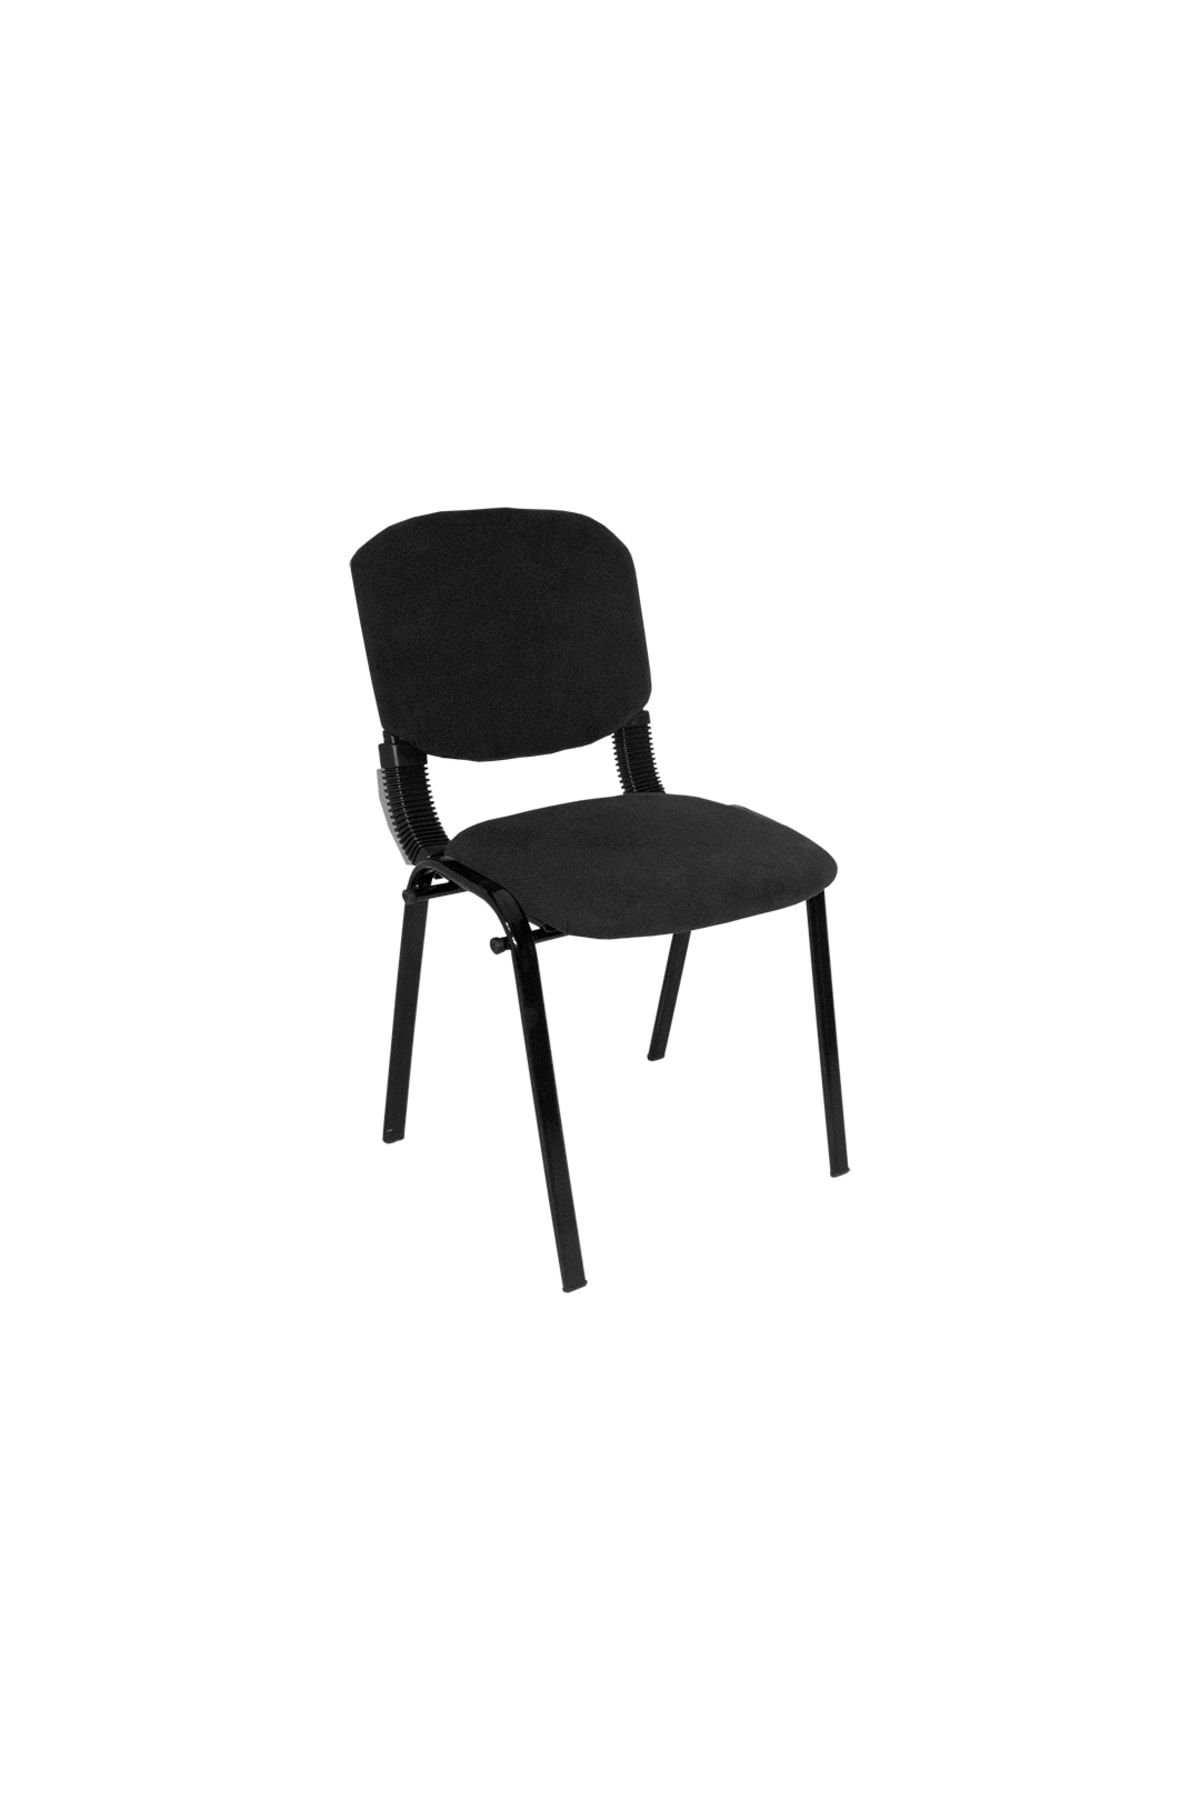 Dockers Form Ofis Ve Toplantı Sandalyesi (kumaş) - Siyah